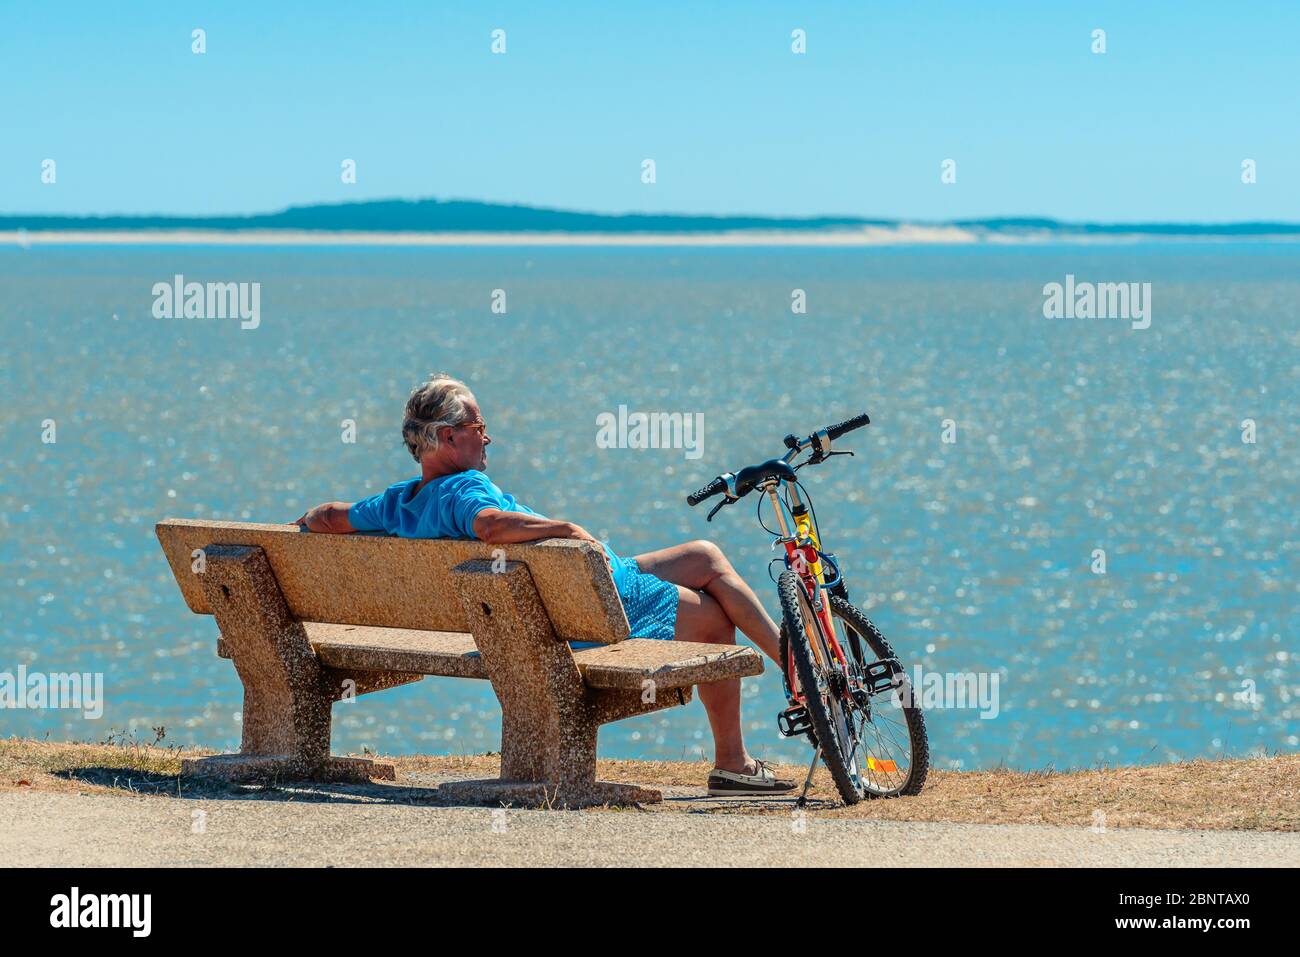 Saint-Palais-sur-Mer, Frankreich: Ein Radfahrer sitzt auf einer Bank mit seinem Fahrrad an seiner Seite und blickt auf das Meer - die Bucht von Biskaya, einen Golf des Atlantischen Ozeans. Stockfoto